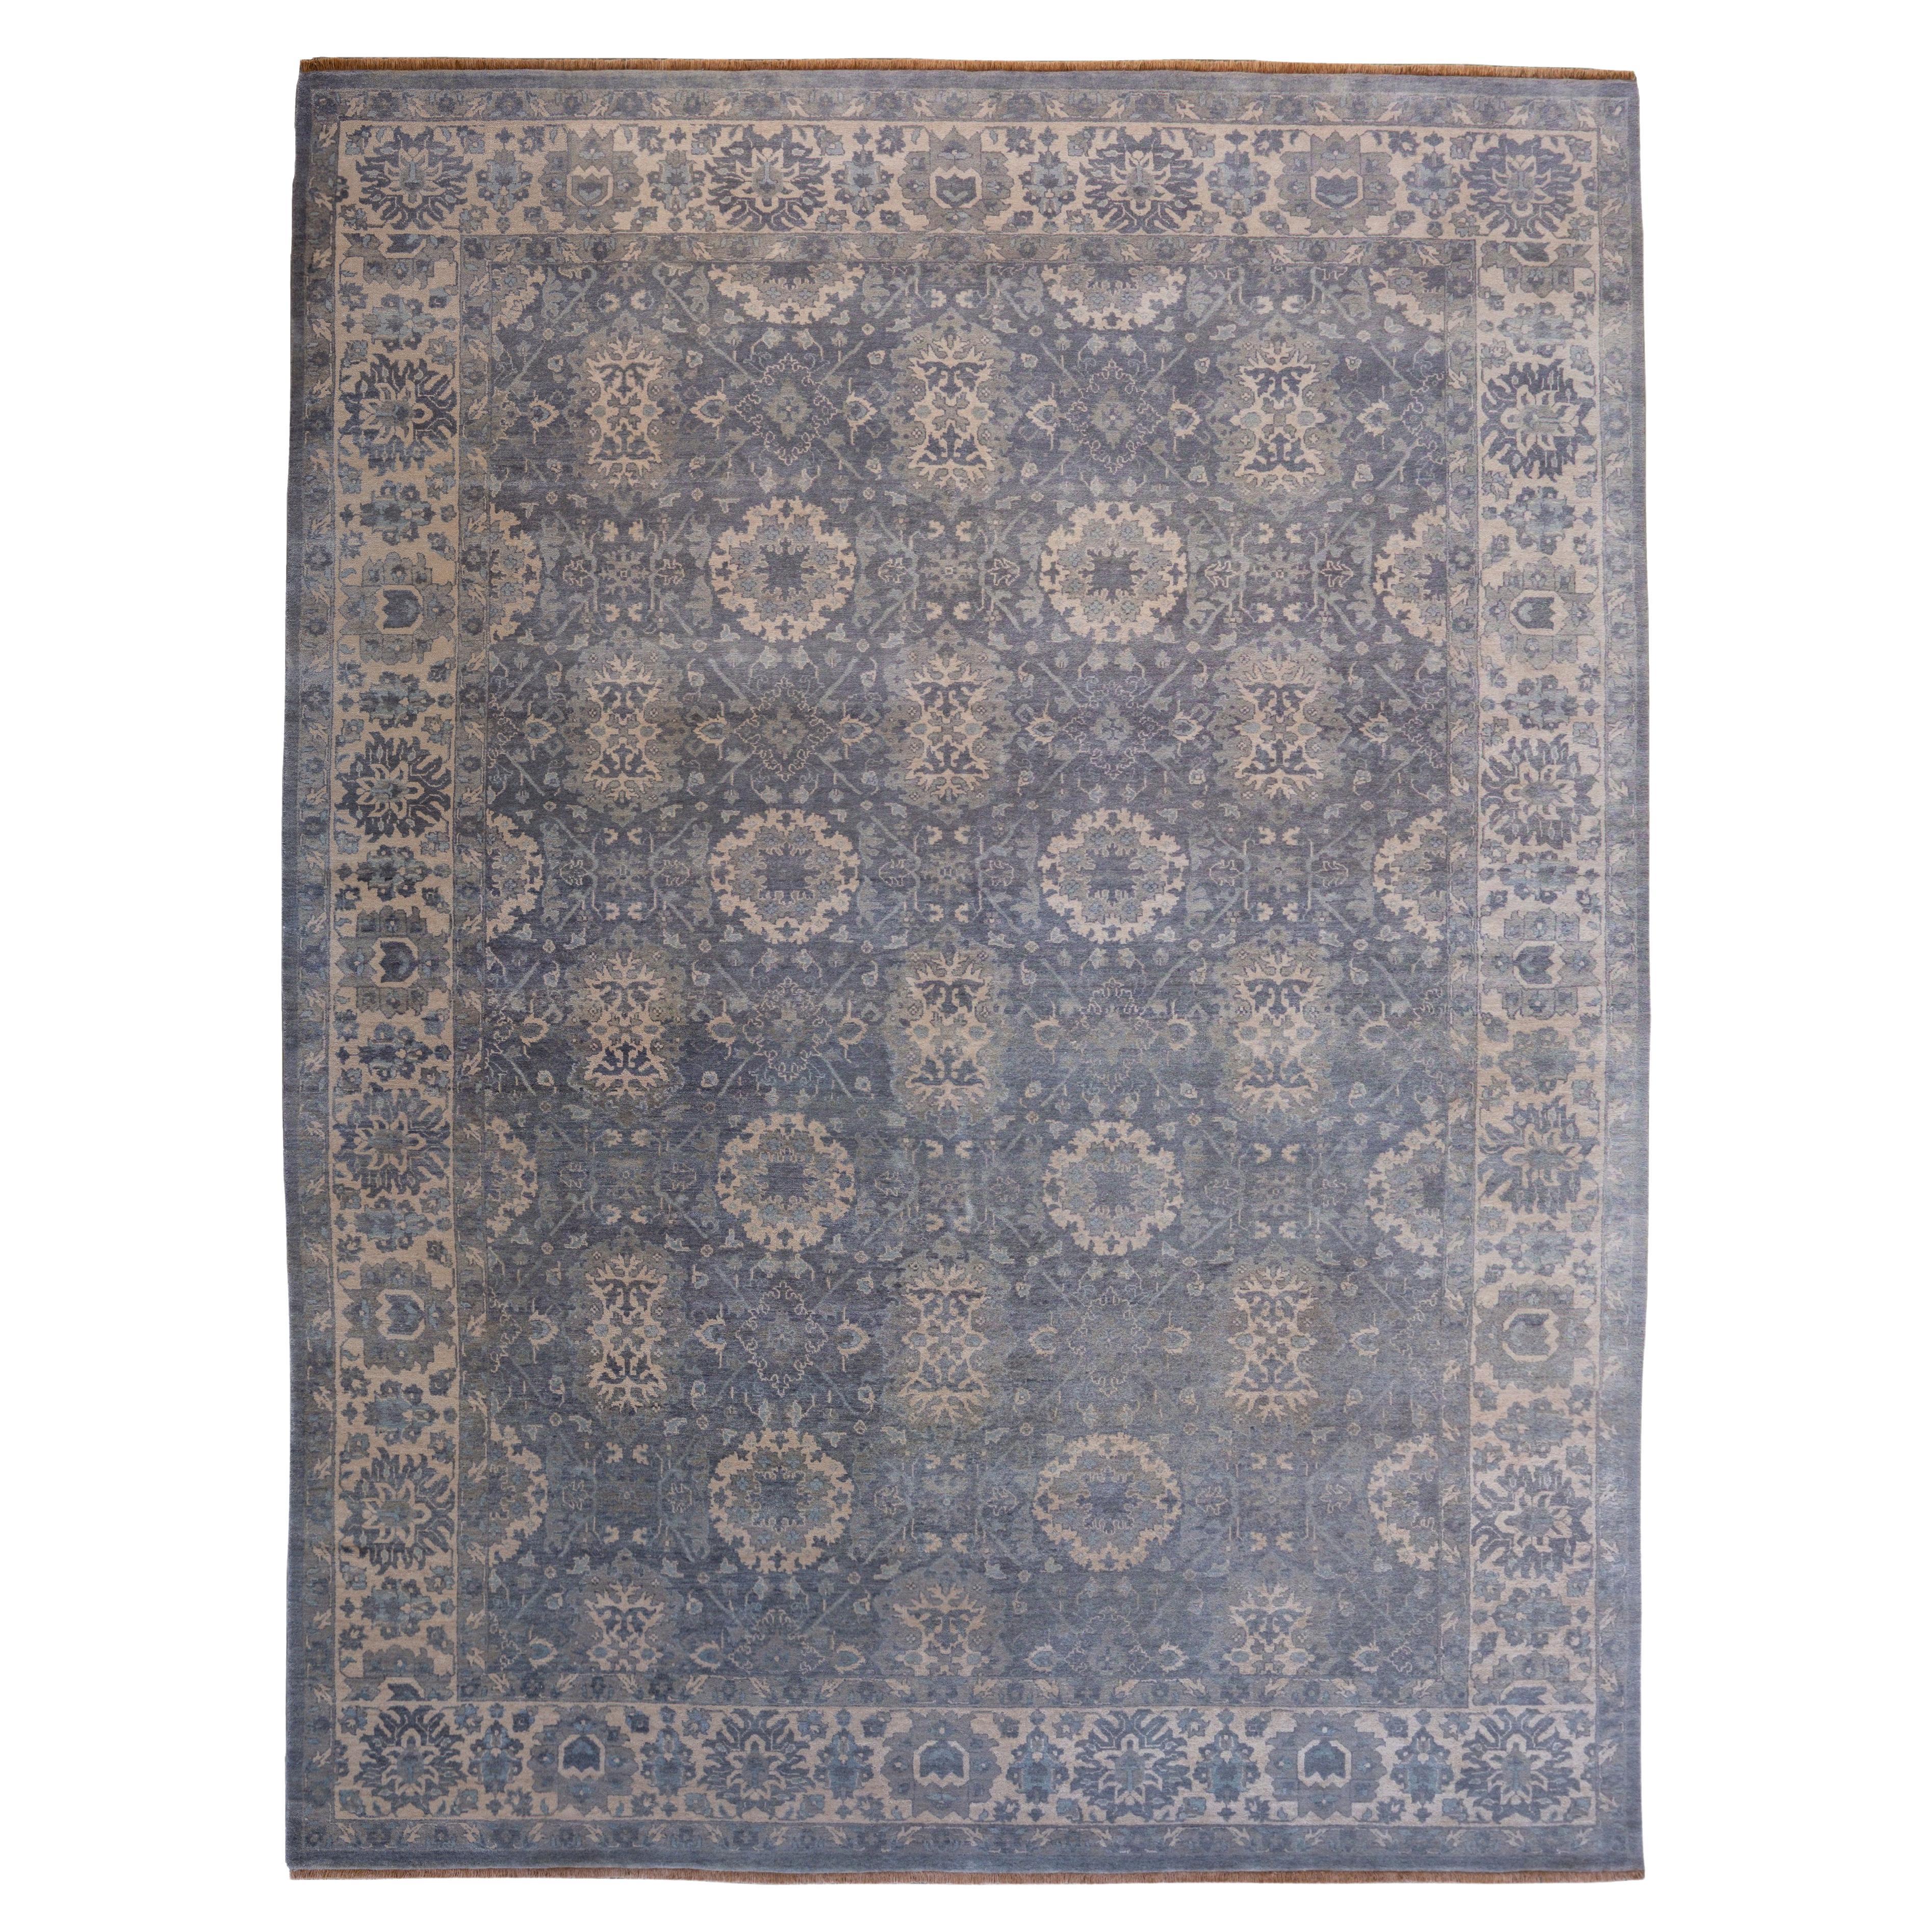 Handgeknüpfter persischer Teppich aus grauer Wolle im Formal- und Übergangsstil, 9' x 12'